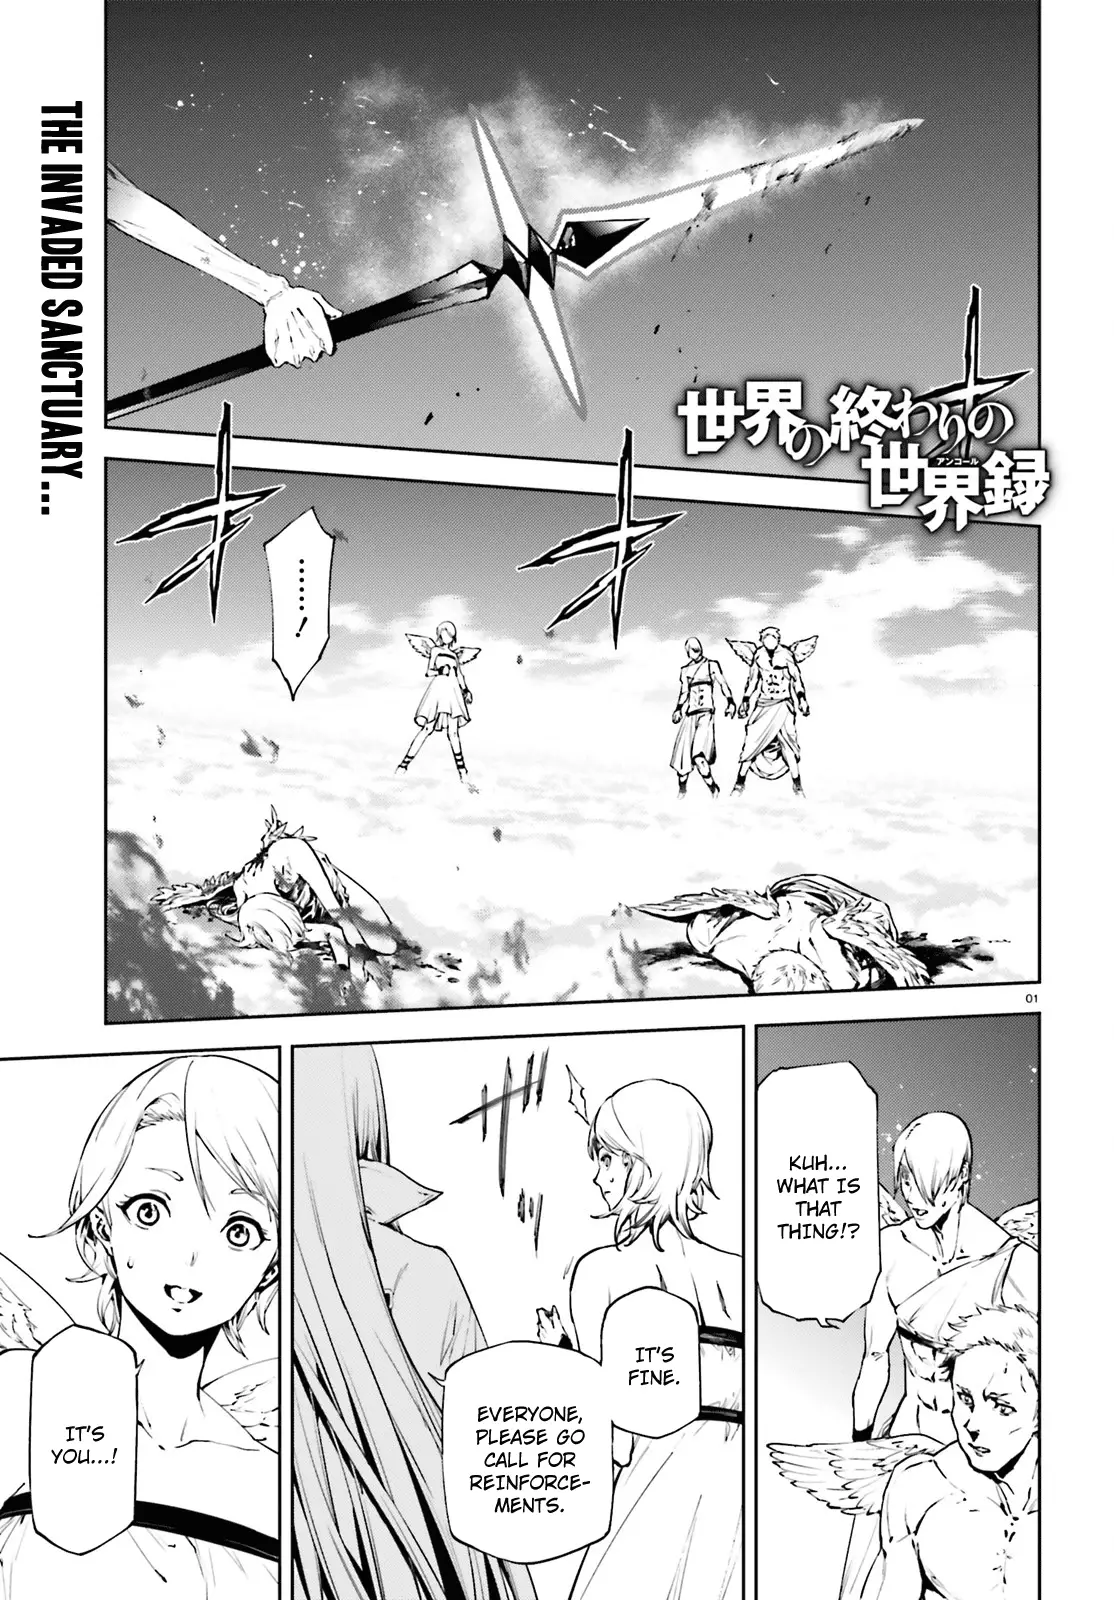 Sekai No Owari No Encore - 29 page 2